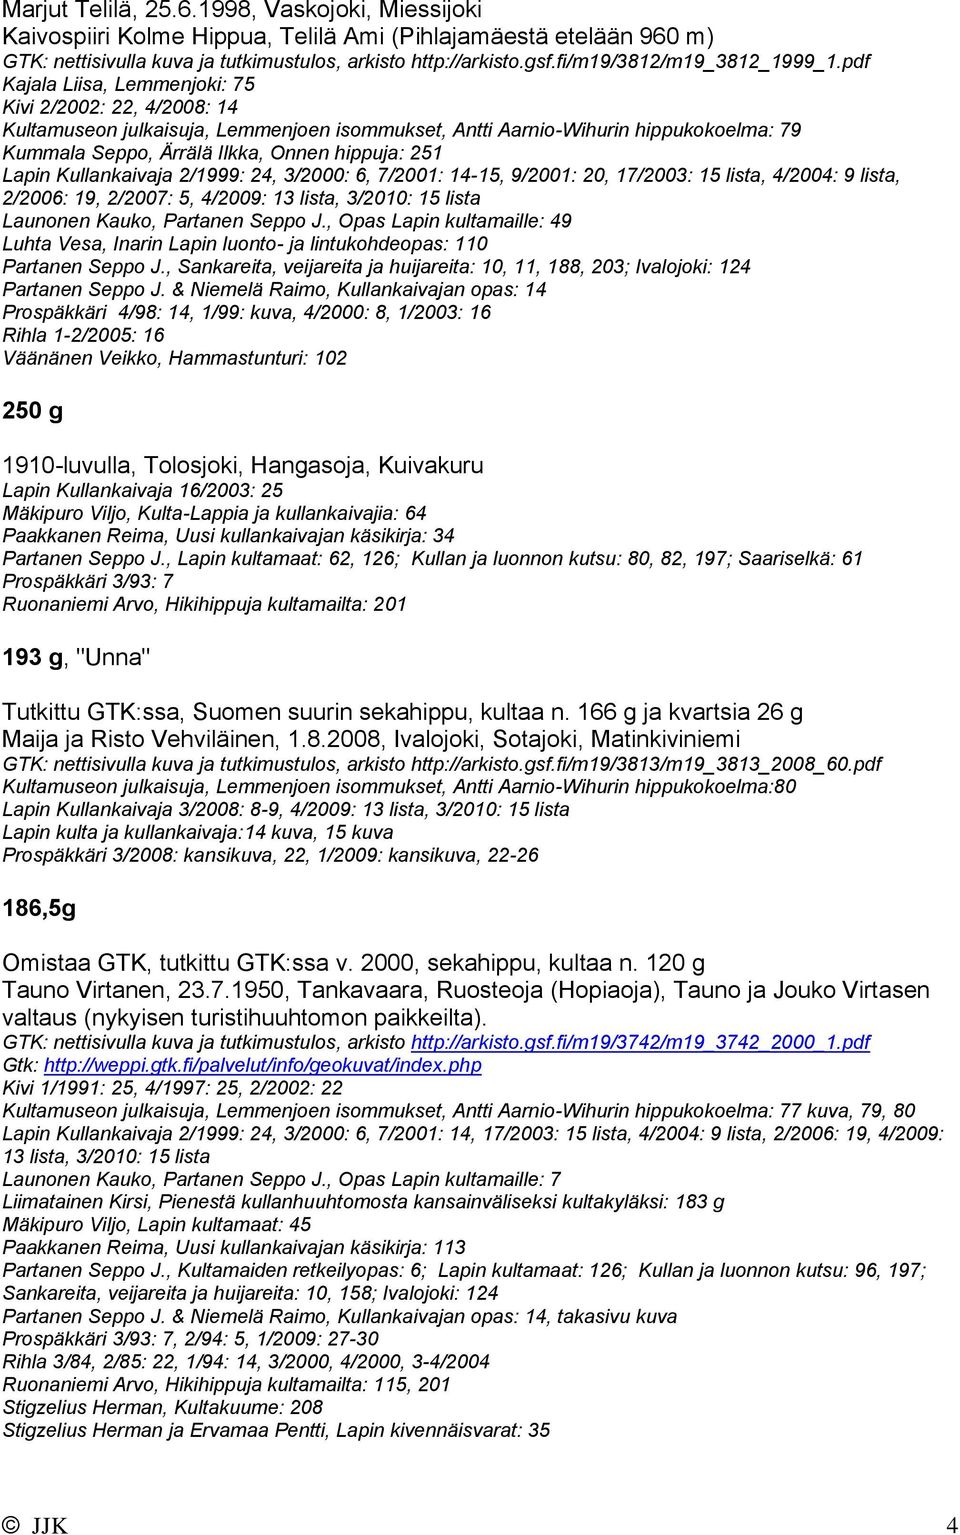 pdf Kajala Liisa, Lemmenjoki: 75 Kivi 2/2002: 22, 4/2008: 14 Kultamuseon julkaisuja, Lemmenjoen isommukset, Antti Aarnio-Wihurin hippukokoelma: 79 Kummala Seppo, Ärrälä Ilkka, Onnen hippuja: 251